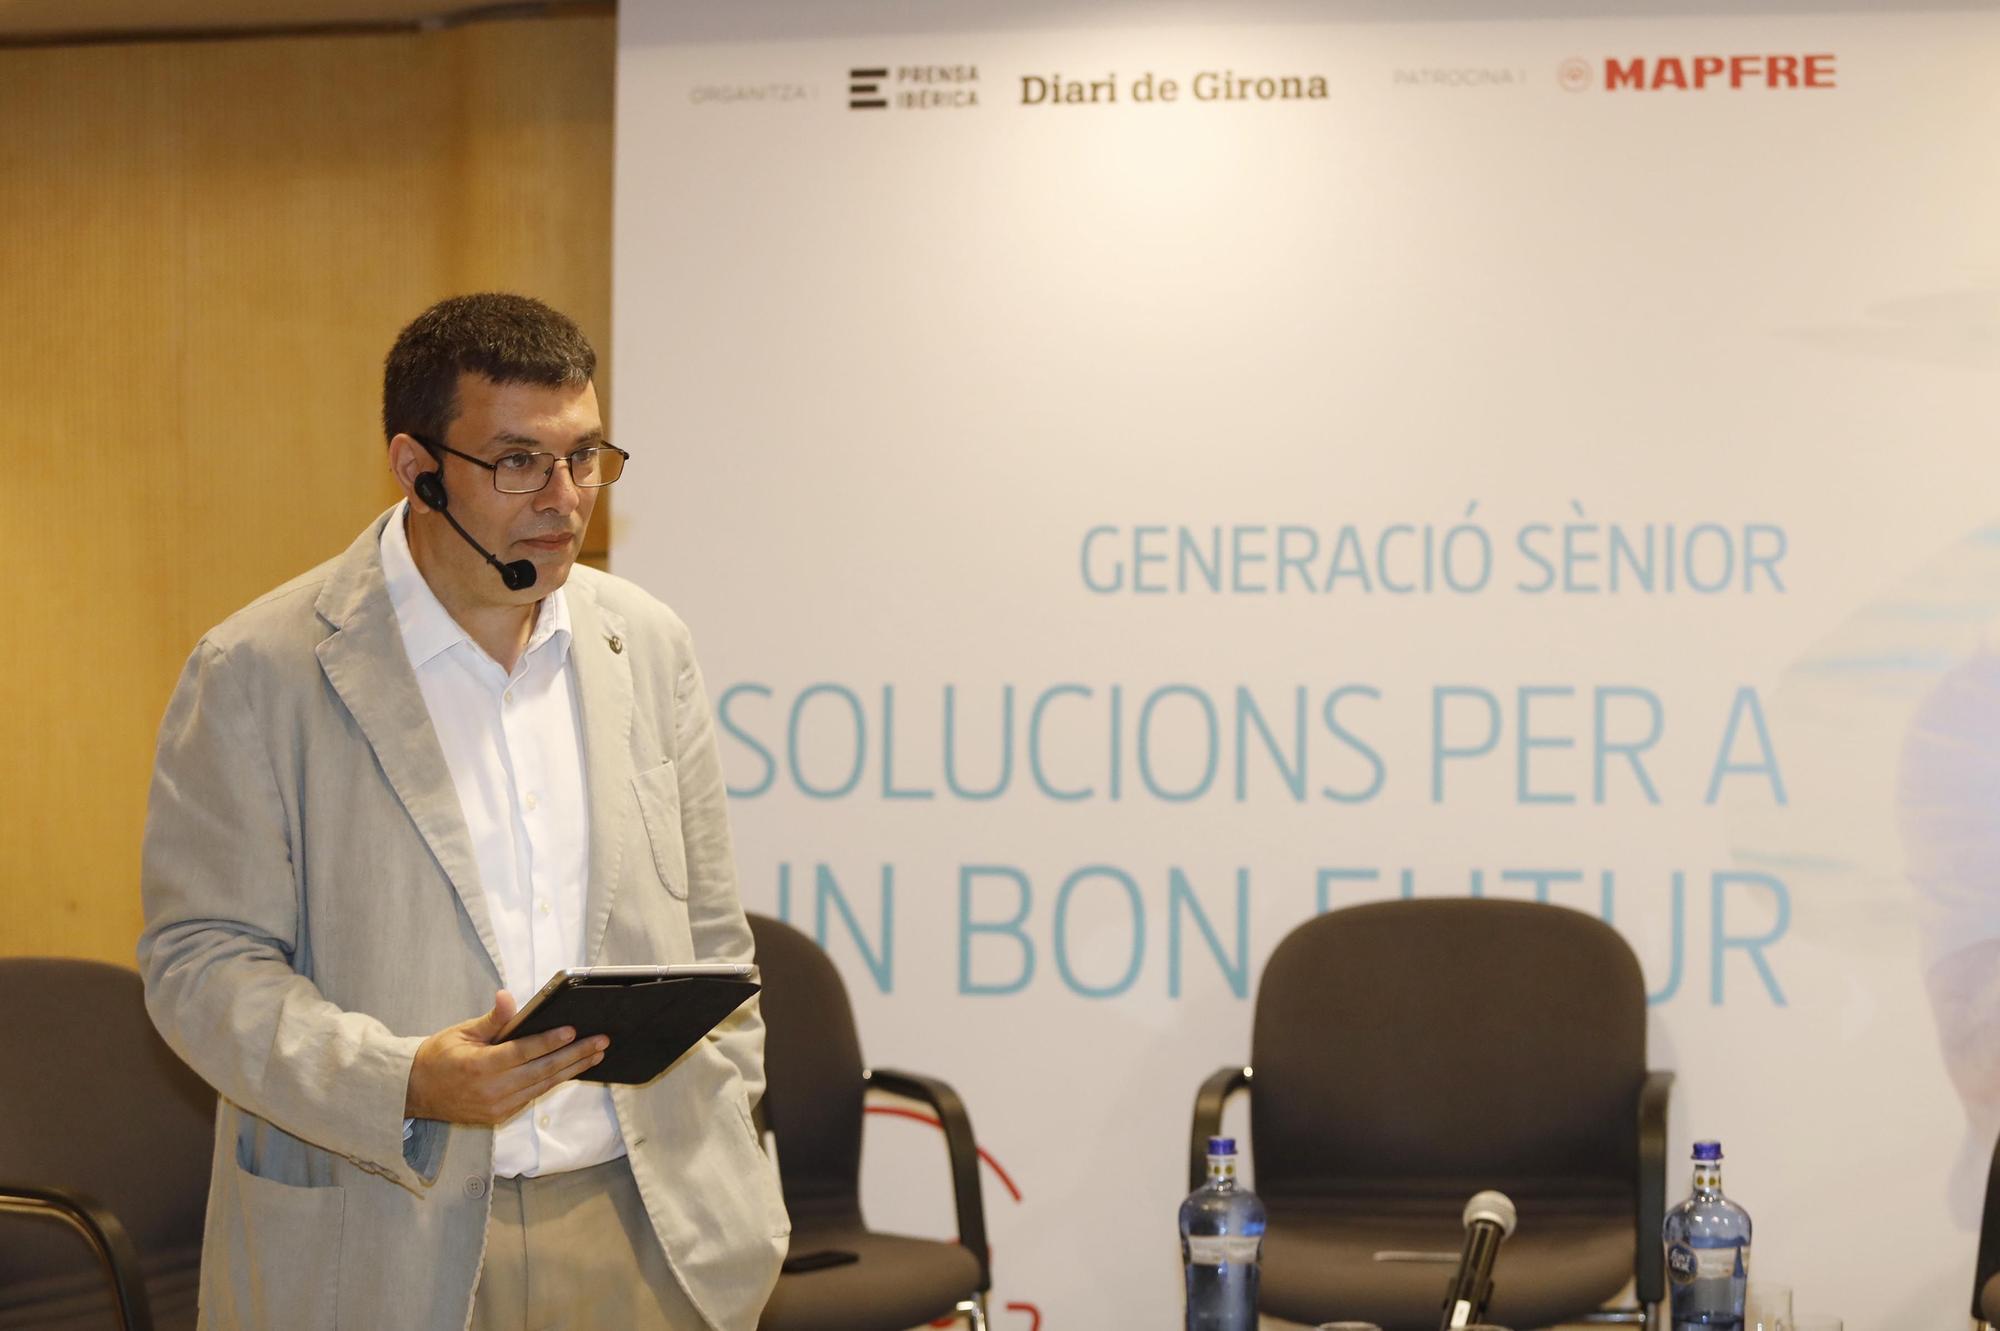 Jornada sobre Generació Sènior de Diari de Girona i Mapfre